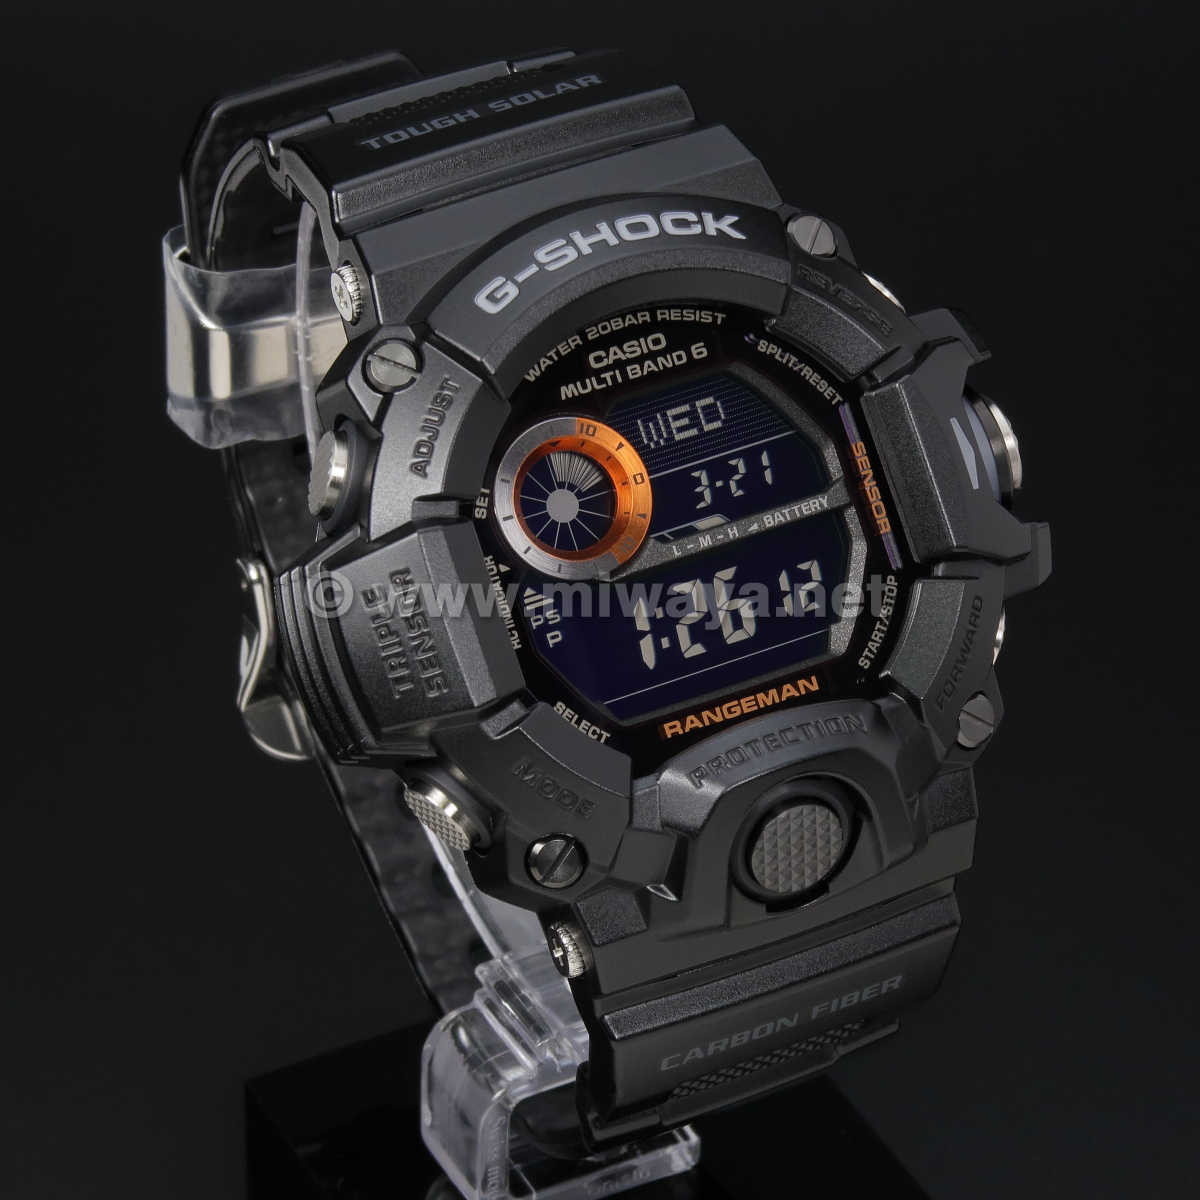 【新品未使用品】G-SHOCK GW-9400BJ-1JF 腕時計 Gショック